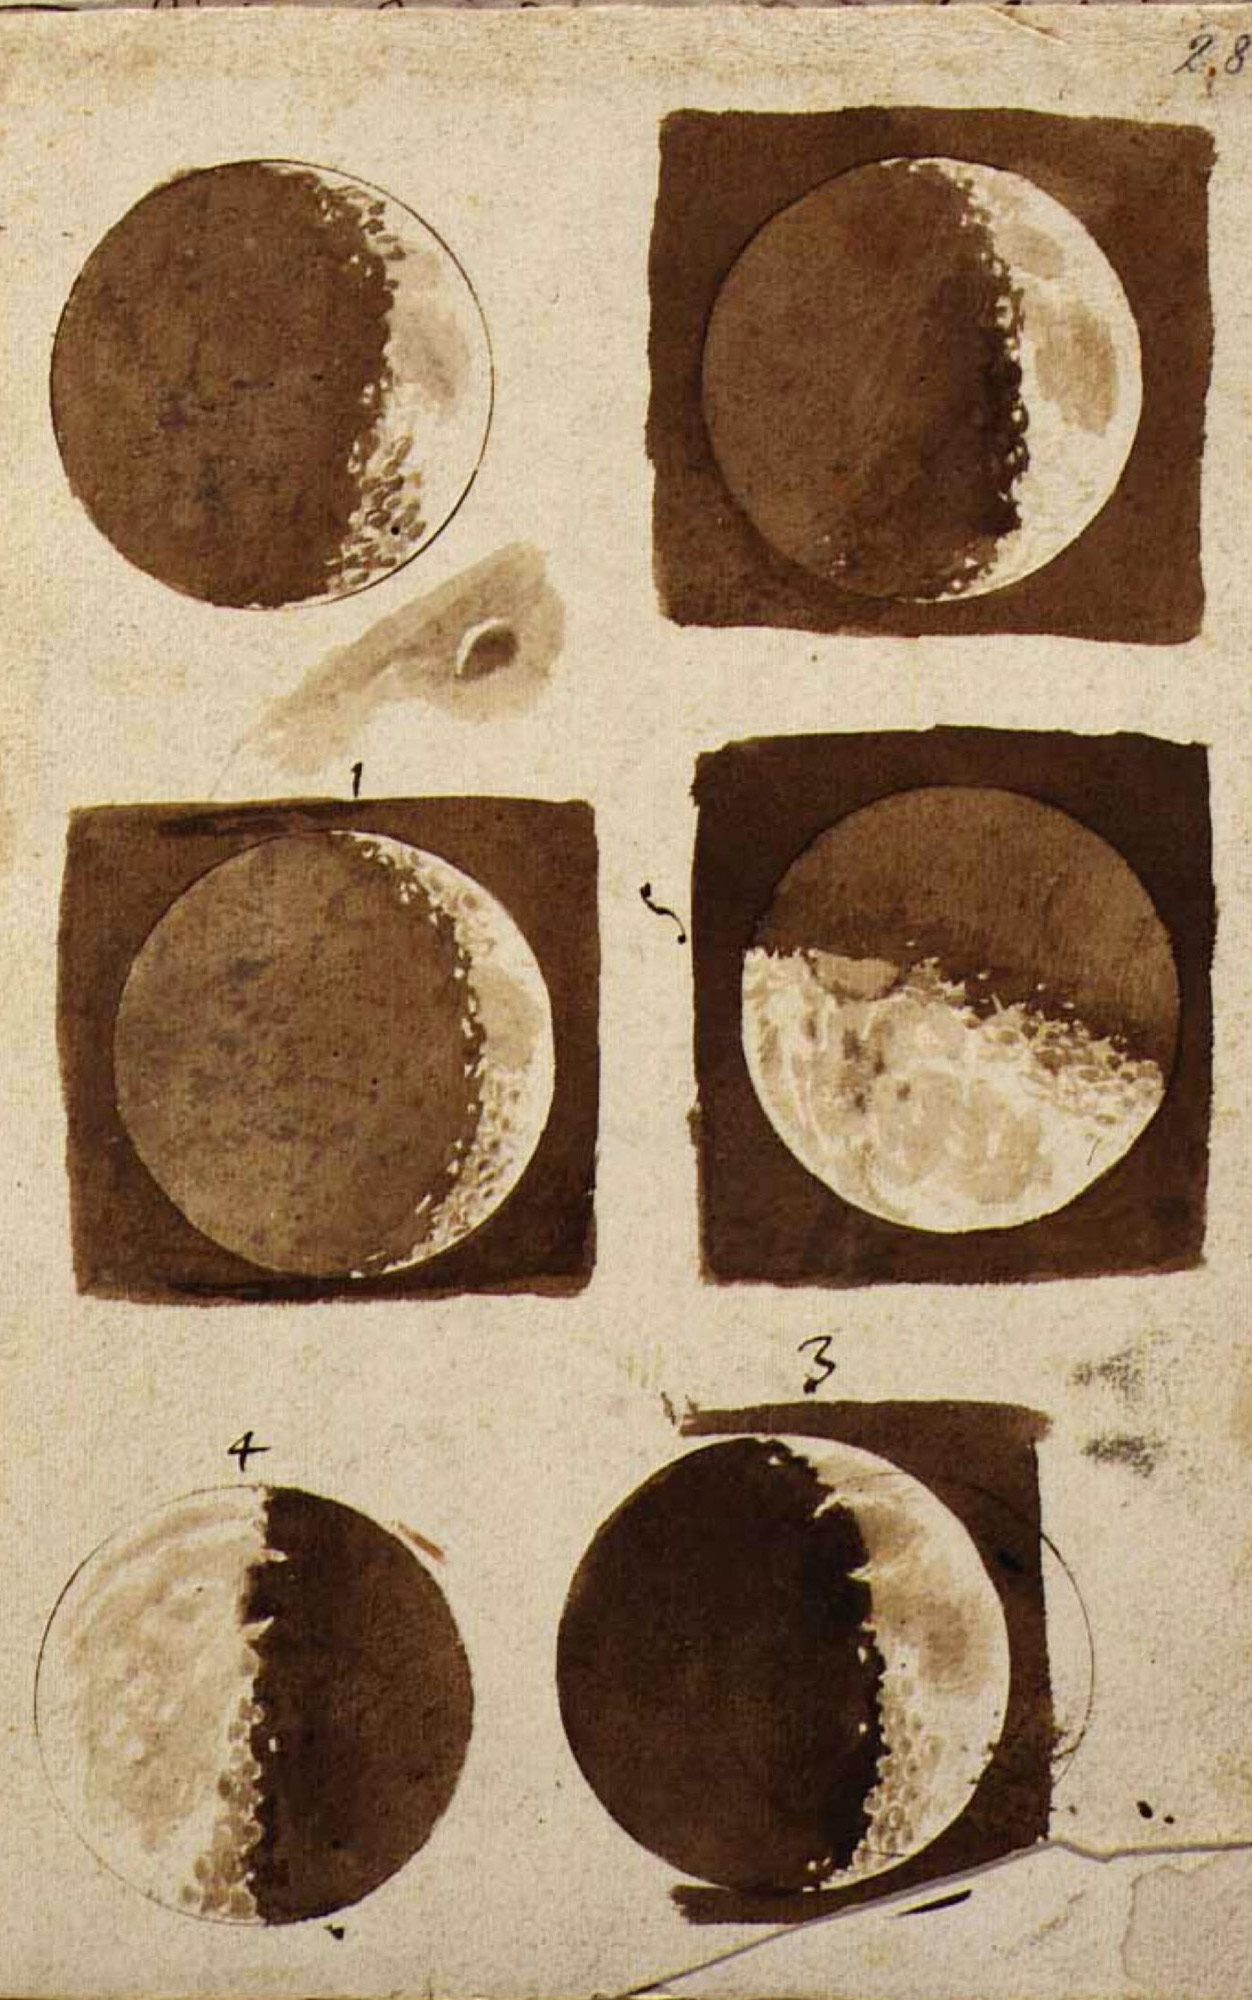 Dibujos de la luna by Galileo Galilei - 1609 